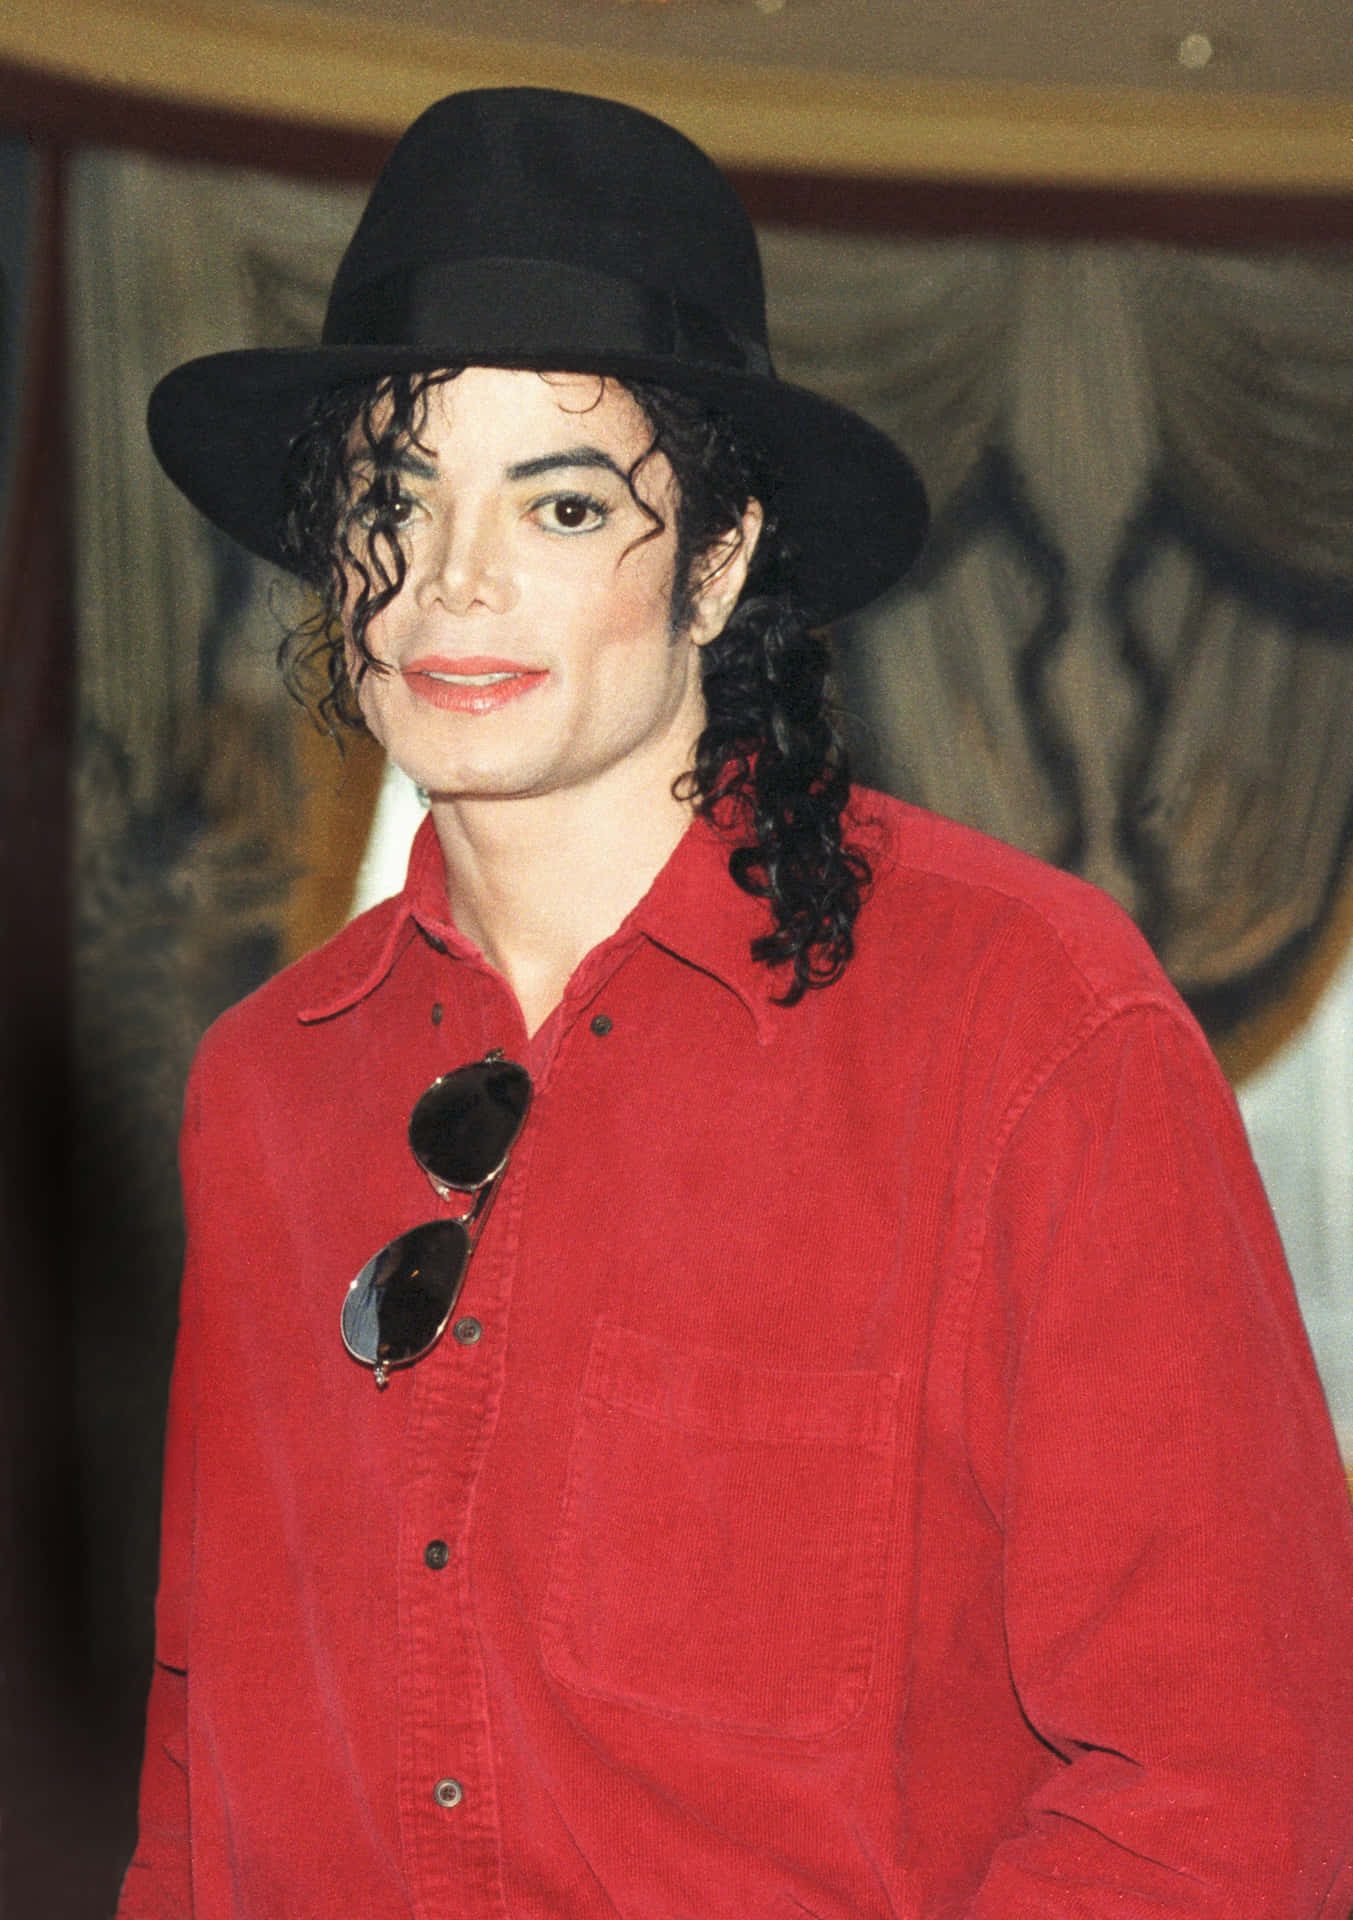 Billeder af Michael Jackson pynte denne tapet.